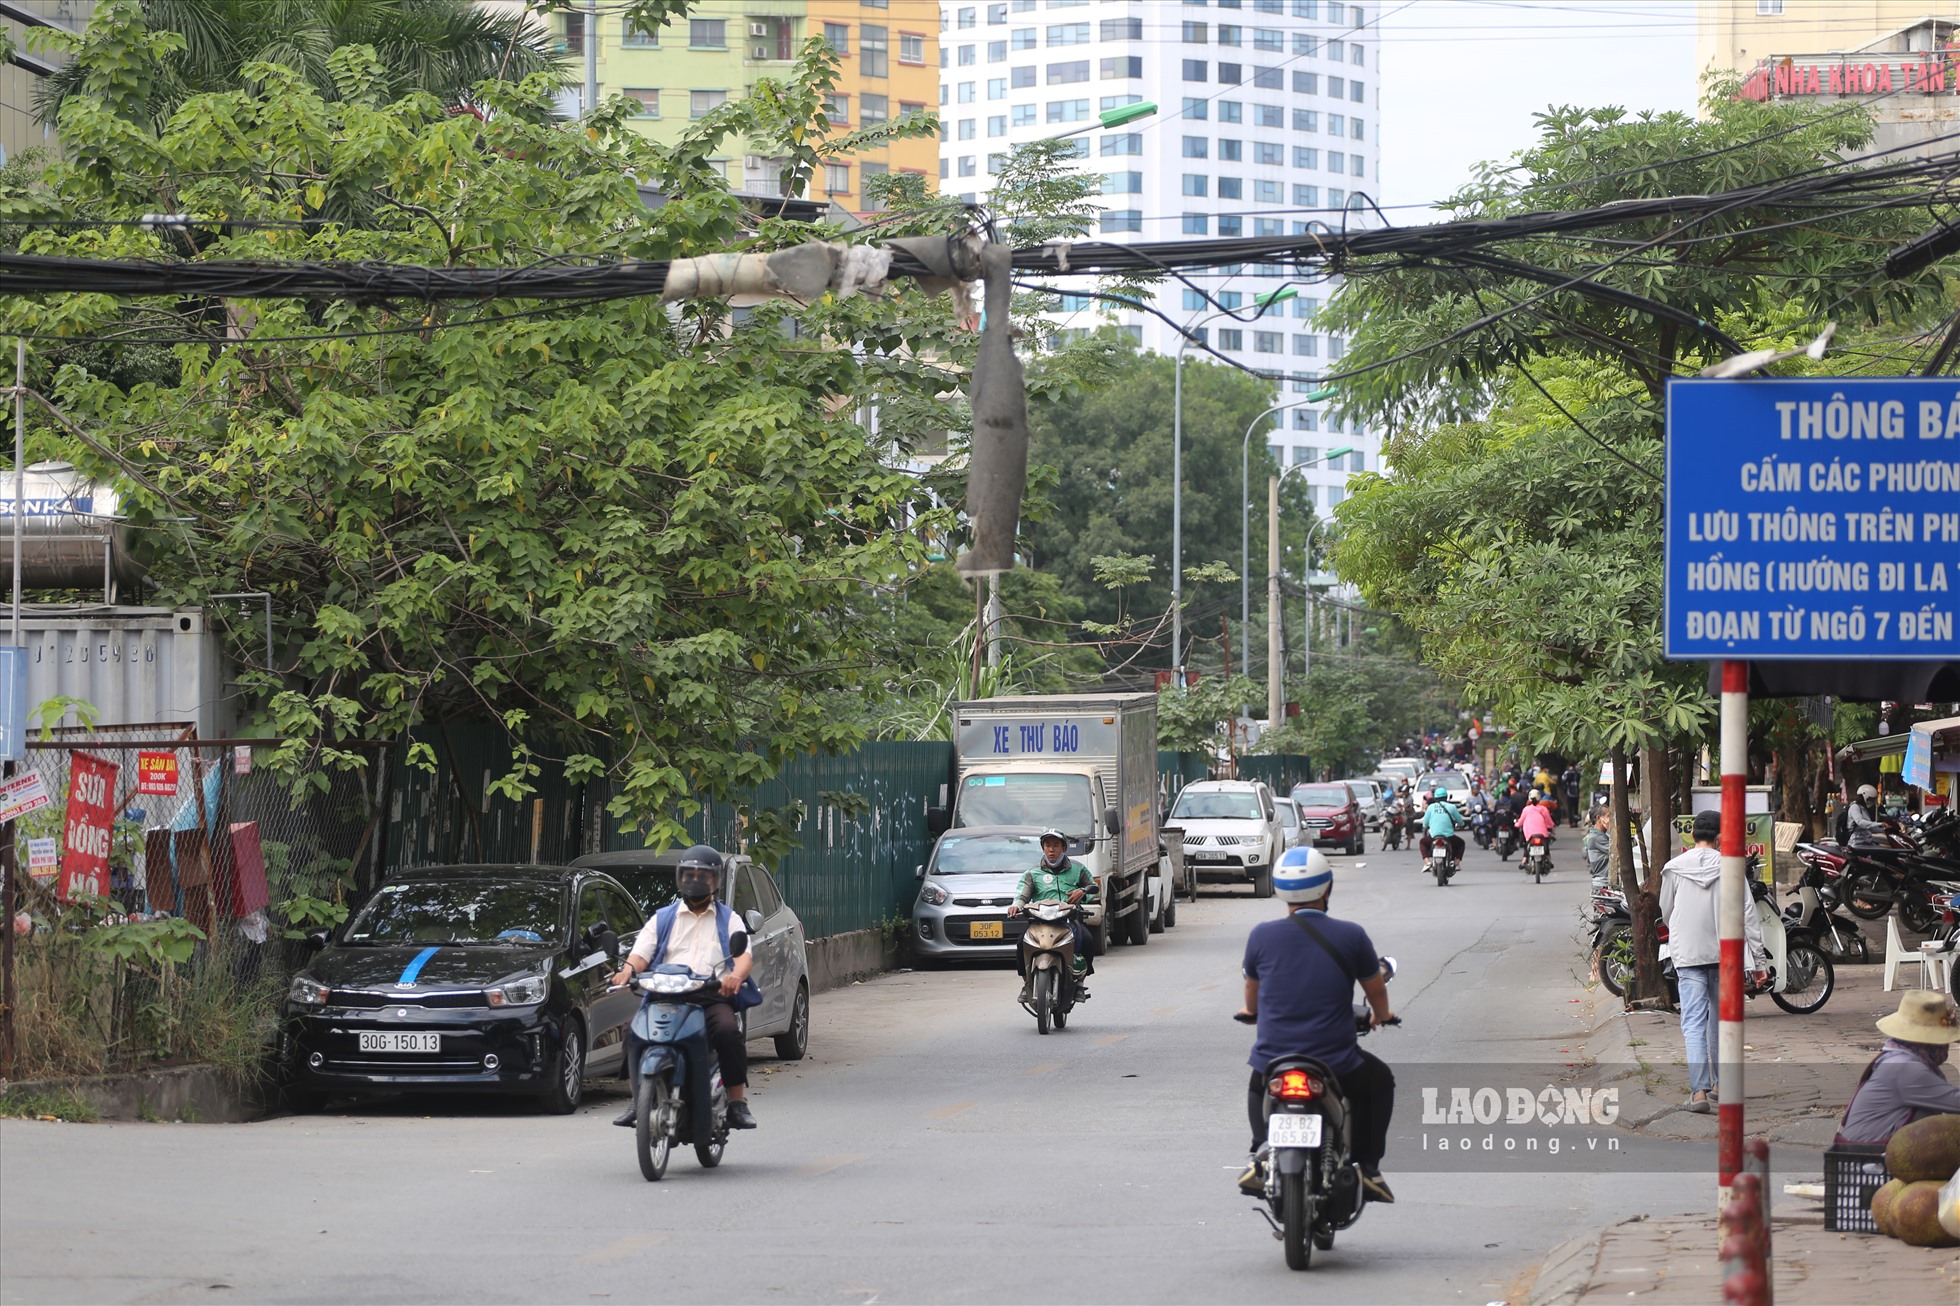 Các đường dây điện, dây viễn thông trên nhiều tuyến phố Hà Nội như Đê La Thành, Thành Công, Trường Chinh...đang xảy ra tình trạng những búi dây điện, dây viễn thông treo lủng lẳng trên các cột điện hay men theo cửa nhà dân, ảnh hưởng đến mỹ quan đô thị cũng như an toàn của người dân sống xung quanh.